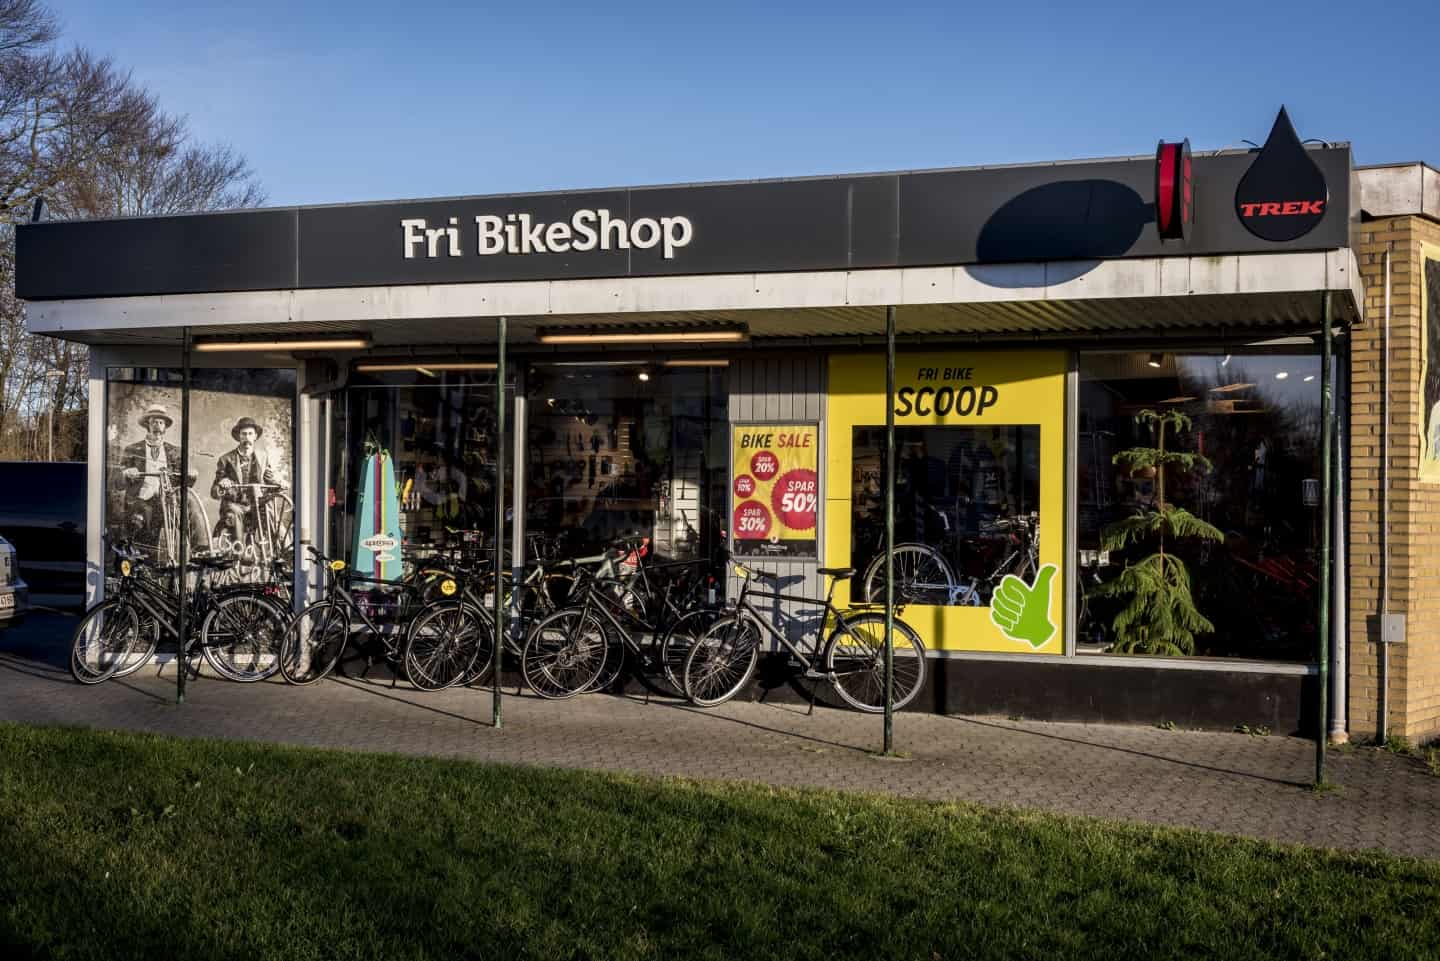 Cykelbutik flytter og firdobler - Vi får Viborgs moderne værksted | ugeavisen.dk